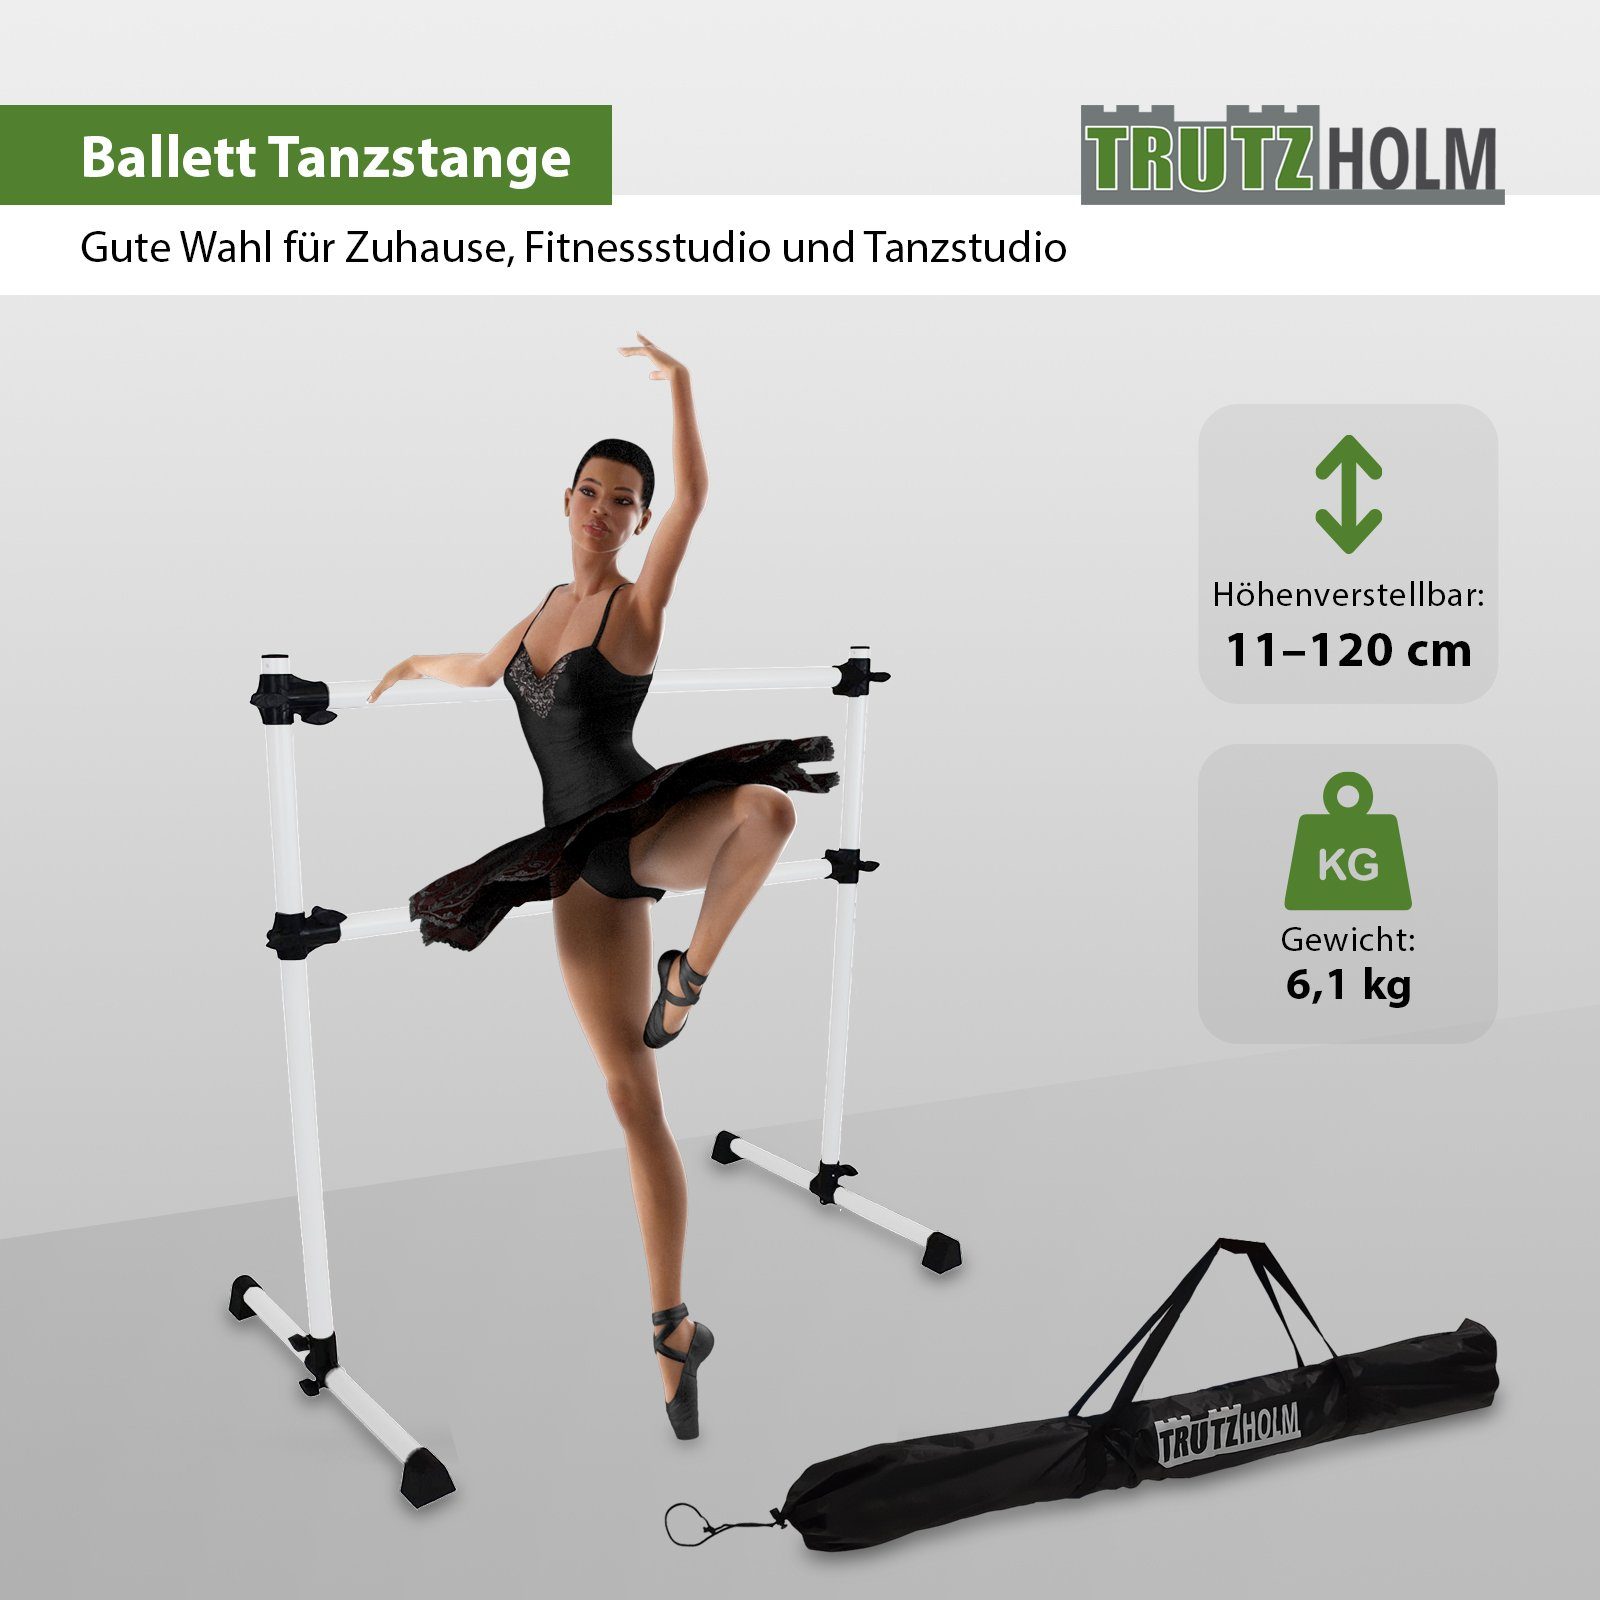 TRUTZHOLM Trainingsstation Ballettstange höhenverstellbar 11-120 von cm für zuhaus Stange Ballett